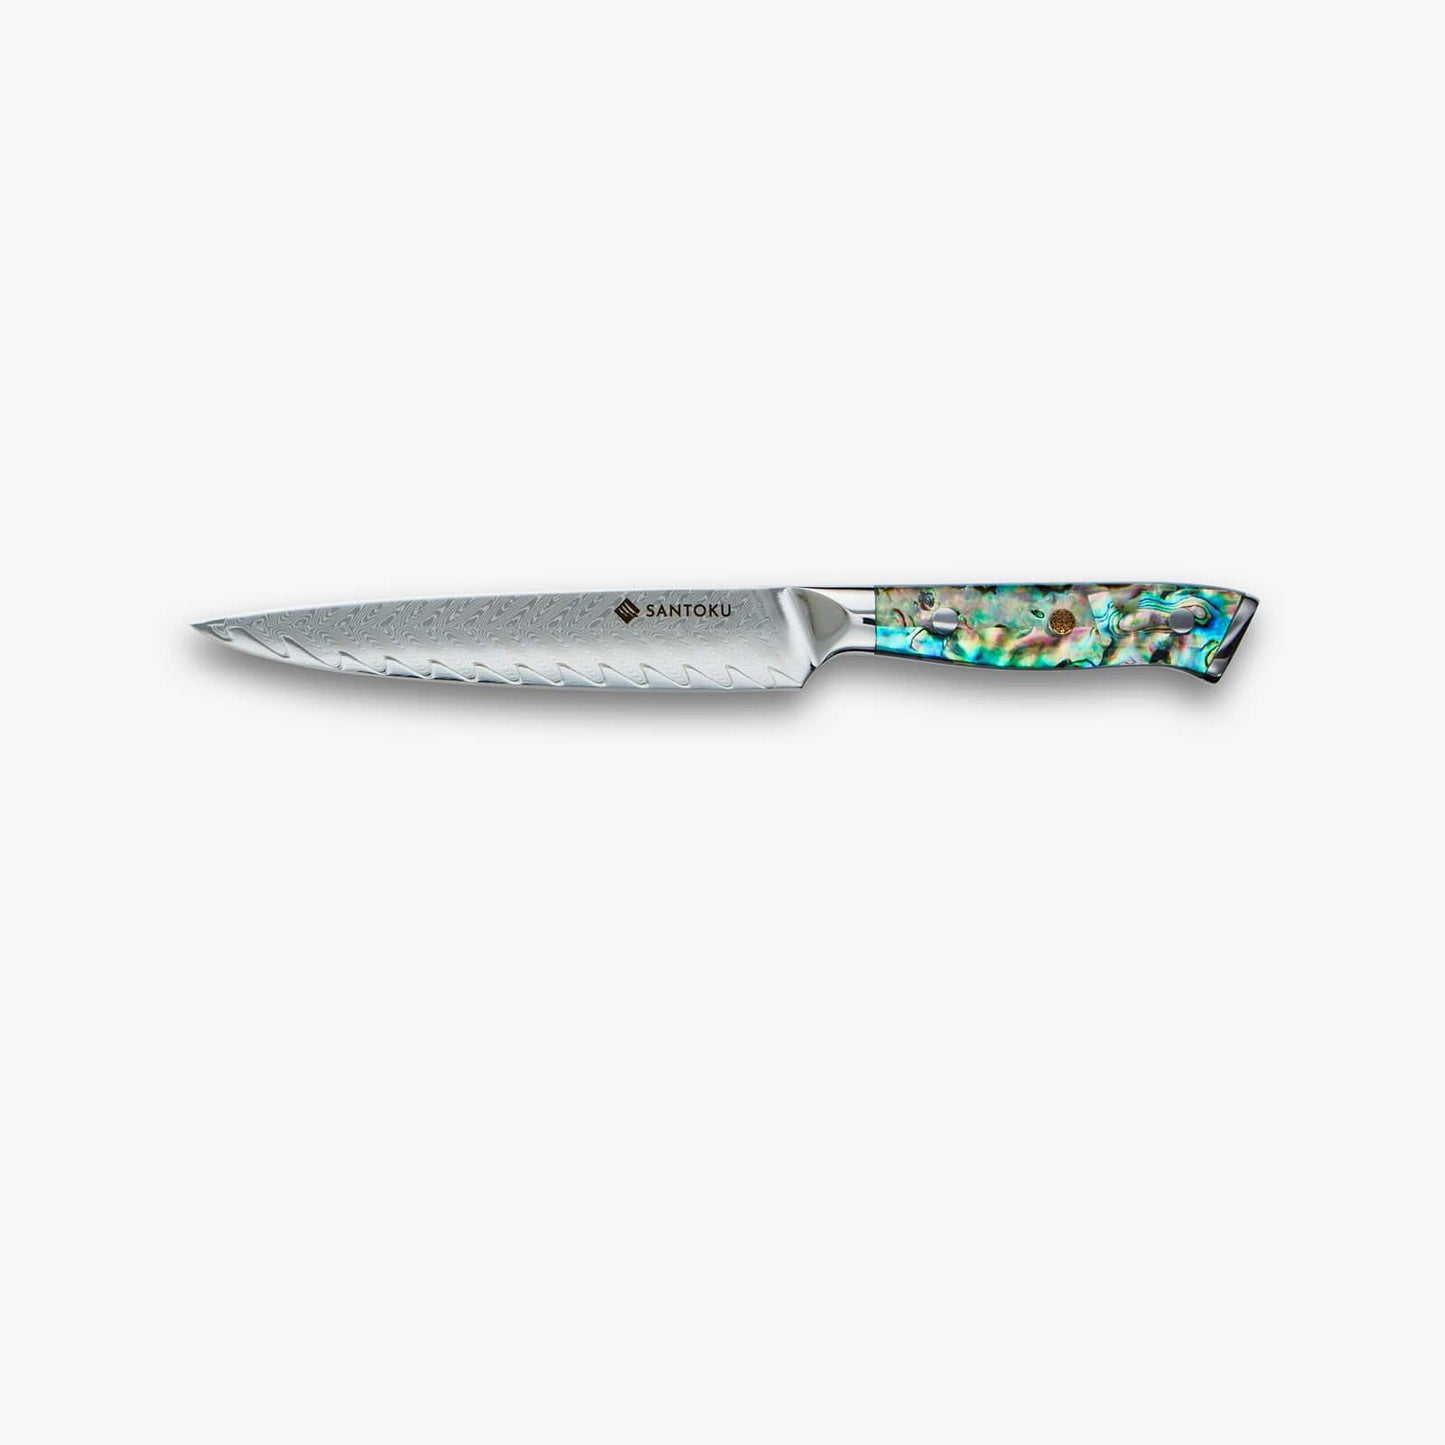 Chikashi (ちかし) стальной нож из дамаска с ручкой